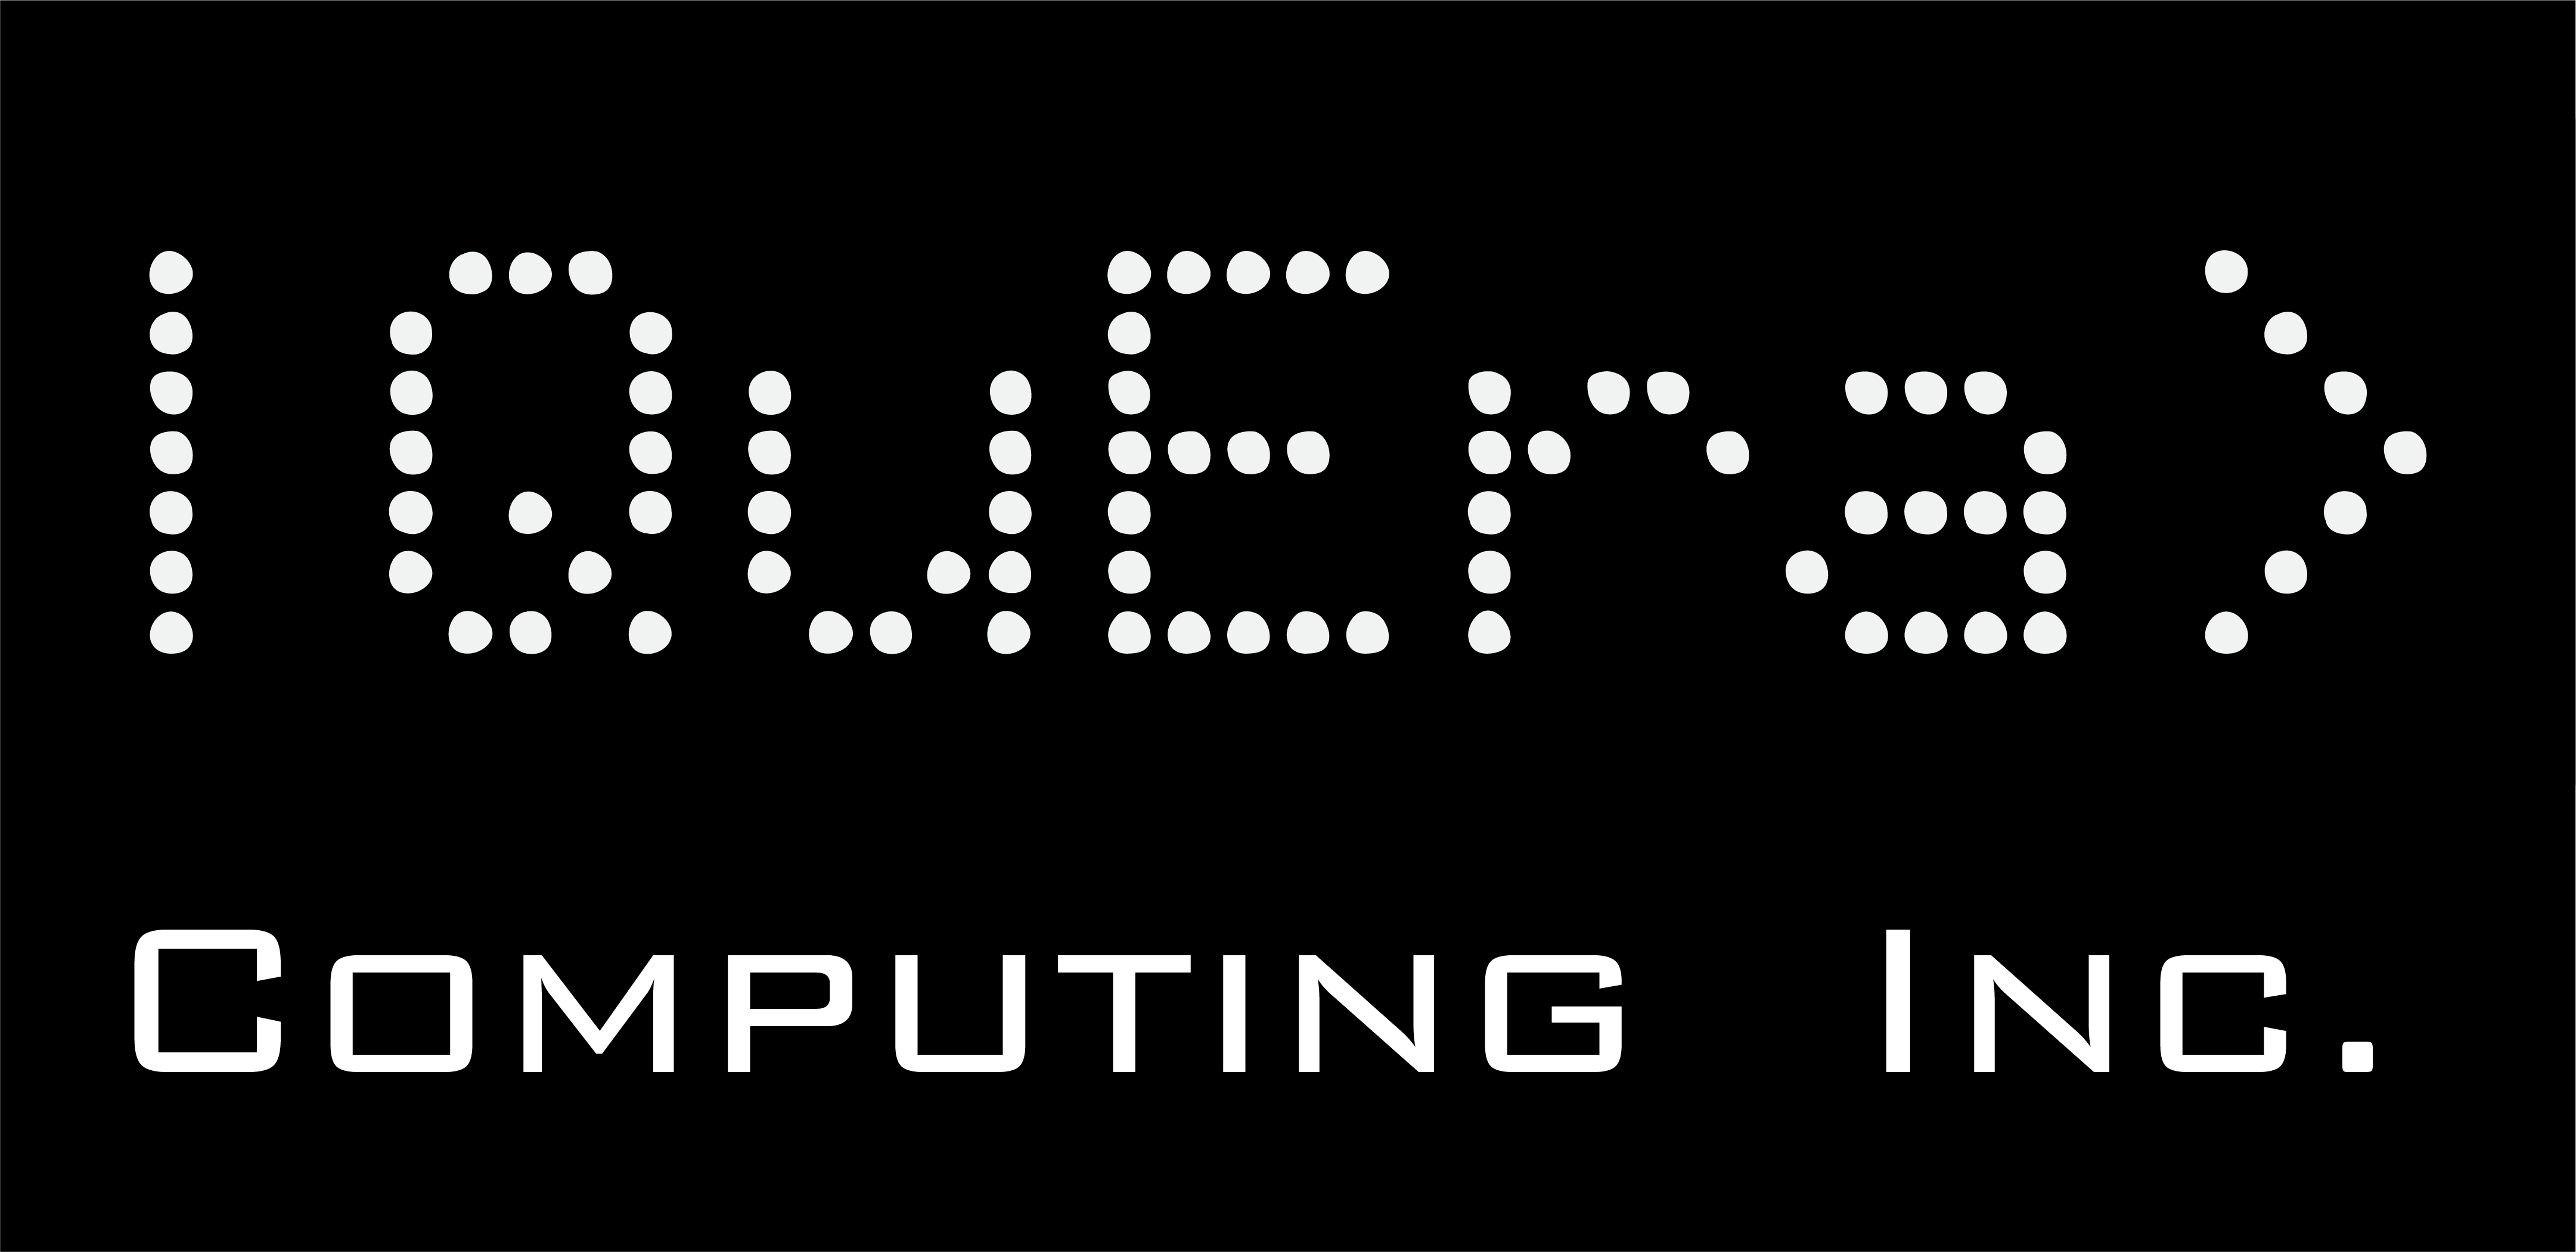 QuEra Computing หลุดพ้นจากการลักลอบด้วยเงิน 17 ล้านเหรียญสหรัฐเพื่อเปิดตัวอุปกรณ์ควอนตัม ...